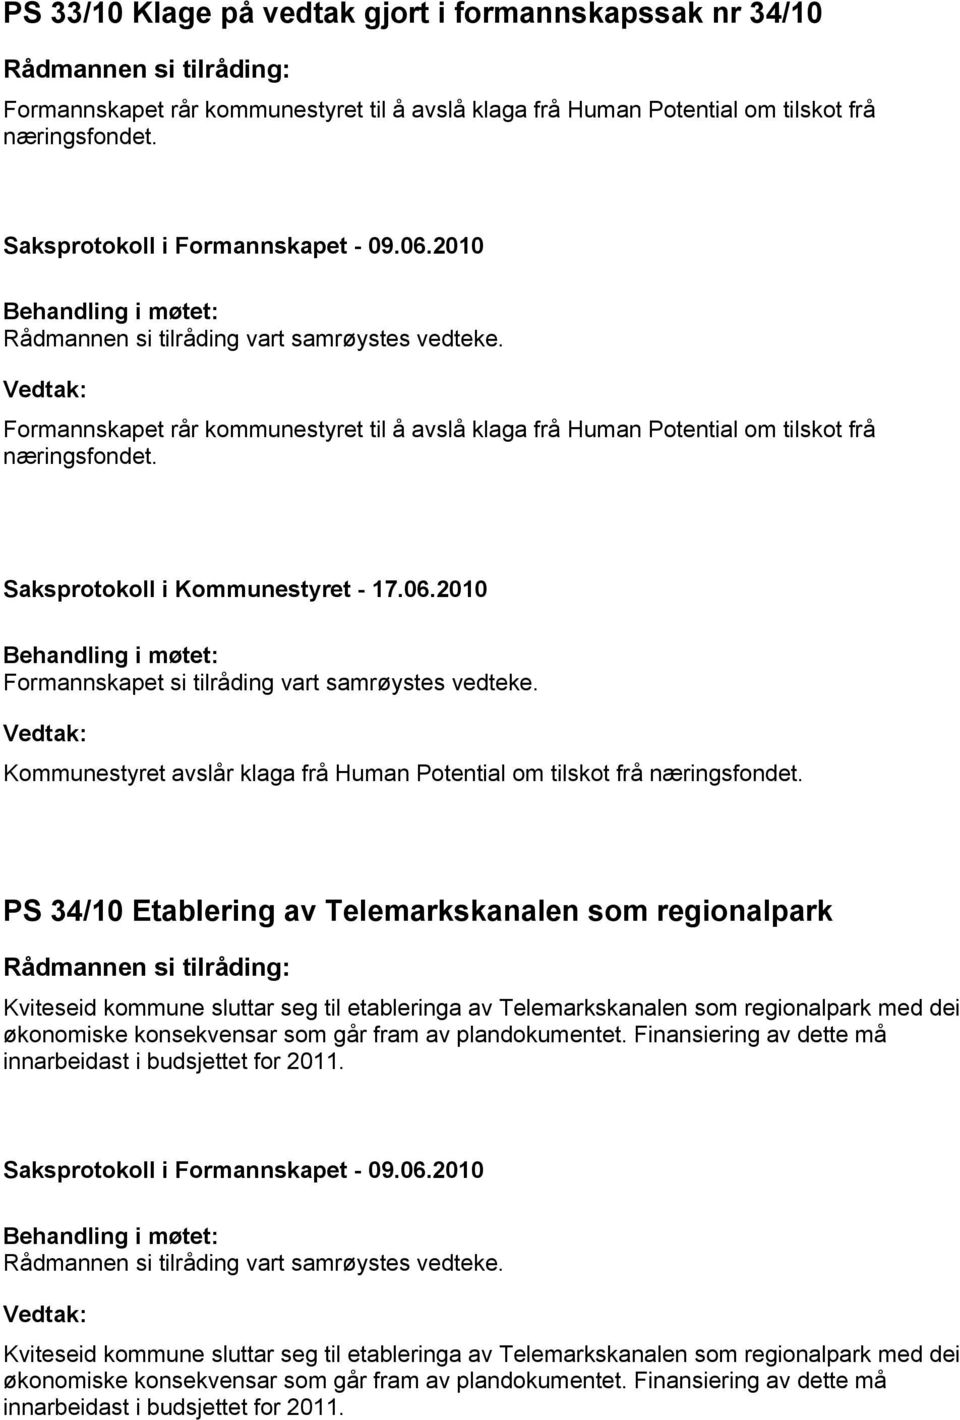 PS 34/10 Etablering av Telemarkskanalen som regionalpark Kviteseid kommune sluttar seg til etableringa av Telemarkskanalen som regionalpark med dei økonomiske konsekvensar som går fram av